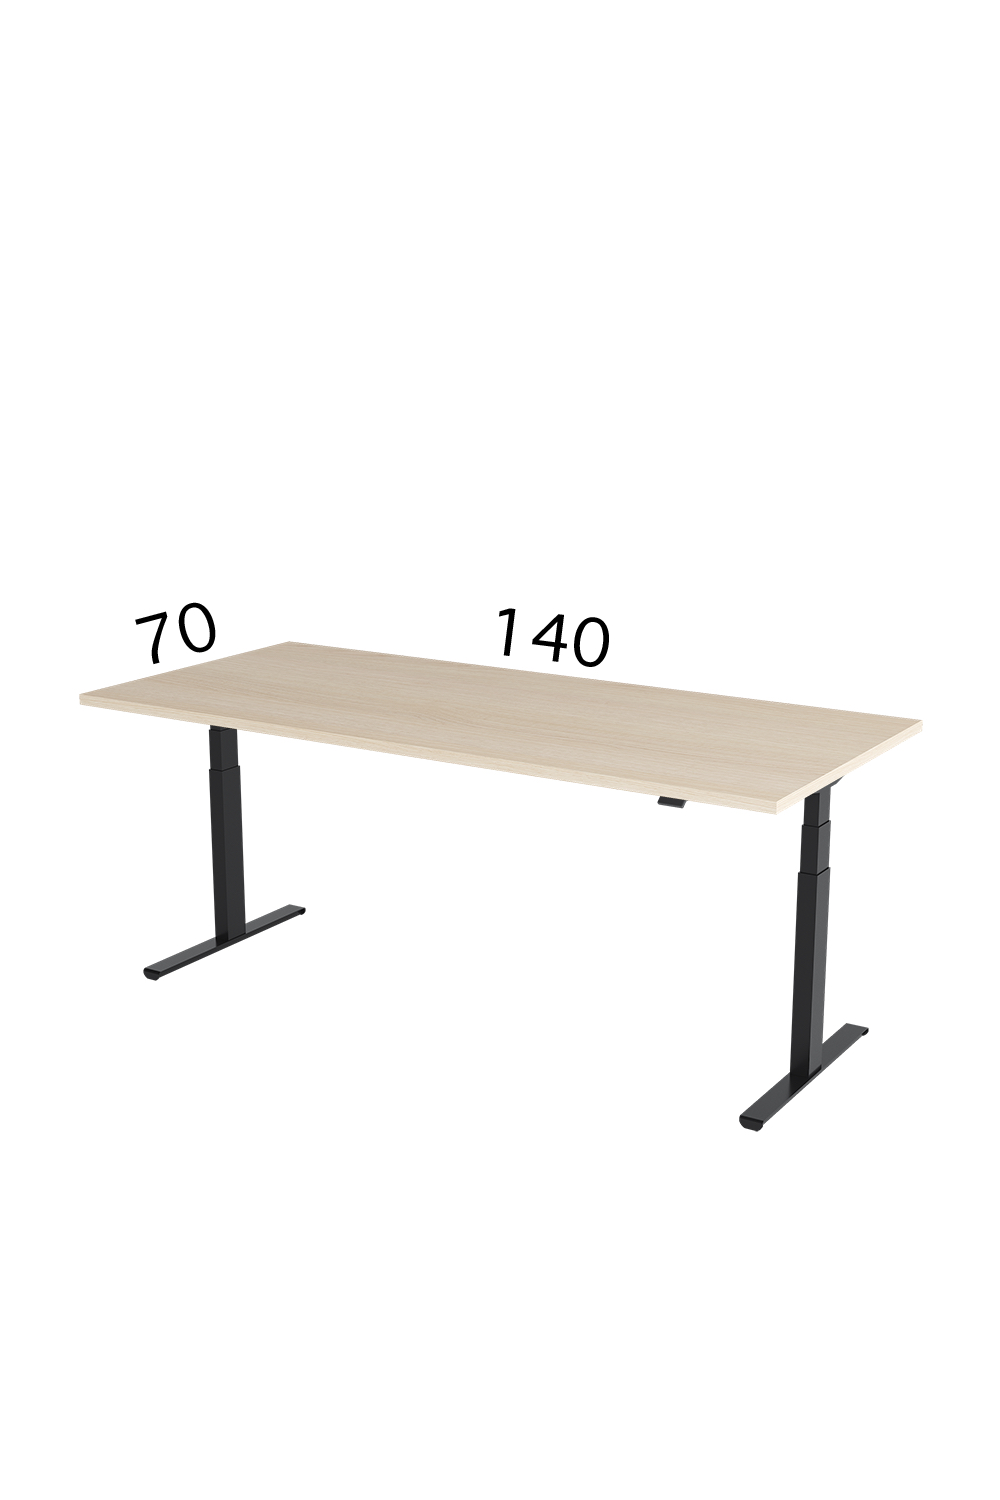 Height adjustable desk, Height-adjustable desk UNIKA ERGO | 70 cm x 140 cm, Height-adjustable table, adjustable height desk, adjustable heigth table, adjustable desk, reguliuojami stalai, vildika katalogas, darbo stalų gamyba, vildika stalai, pakeliamas stalas, reguliuojamo aukščio stalas skelbiu, reguliuojamo aukščio stalas vaikamselektra valdomas stalas, stok sėsk, aktyvi darbo vieta, augantis stalas, kintančio aukščio stalas, 5 metų garantija, aukščiausia kokybė, pakeliami stalai,stacionarus stalas, ergonominis stalas, eggonominiai stalai, reguliuojamo aukščio mechanizmas, stalai su pakeliamu mechanizmu, elektrinis stalas, elektra pakeliami stalai, ergonomiski stalai,